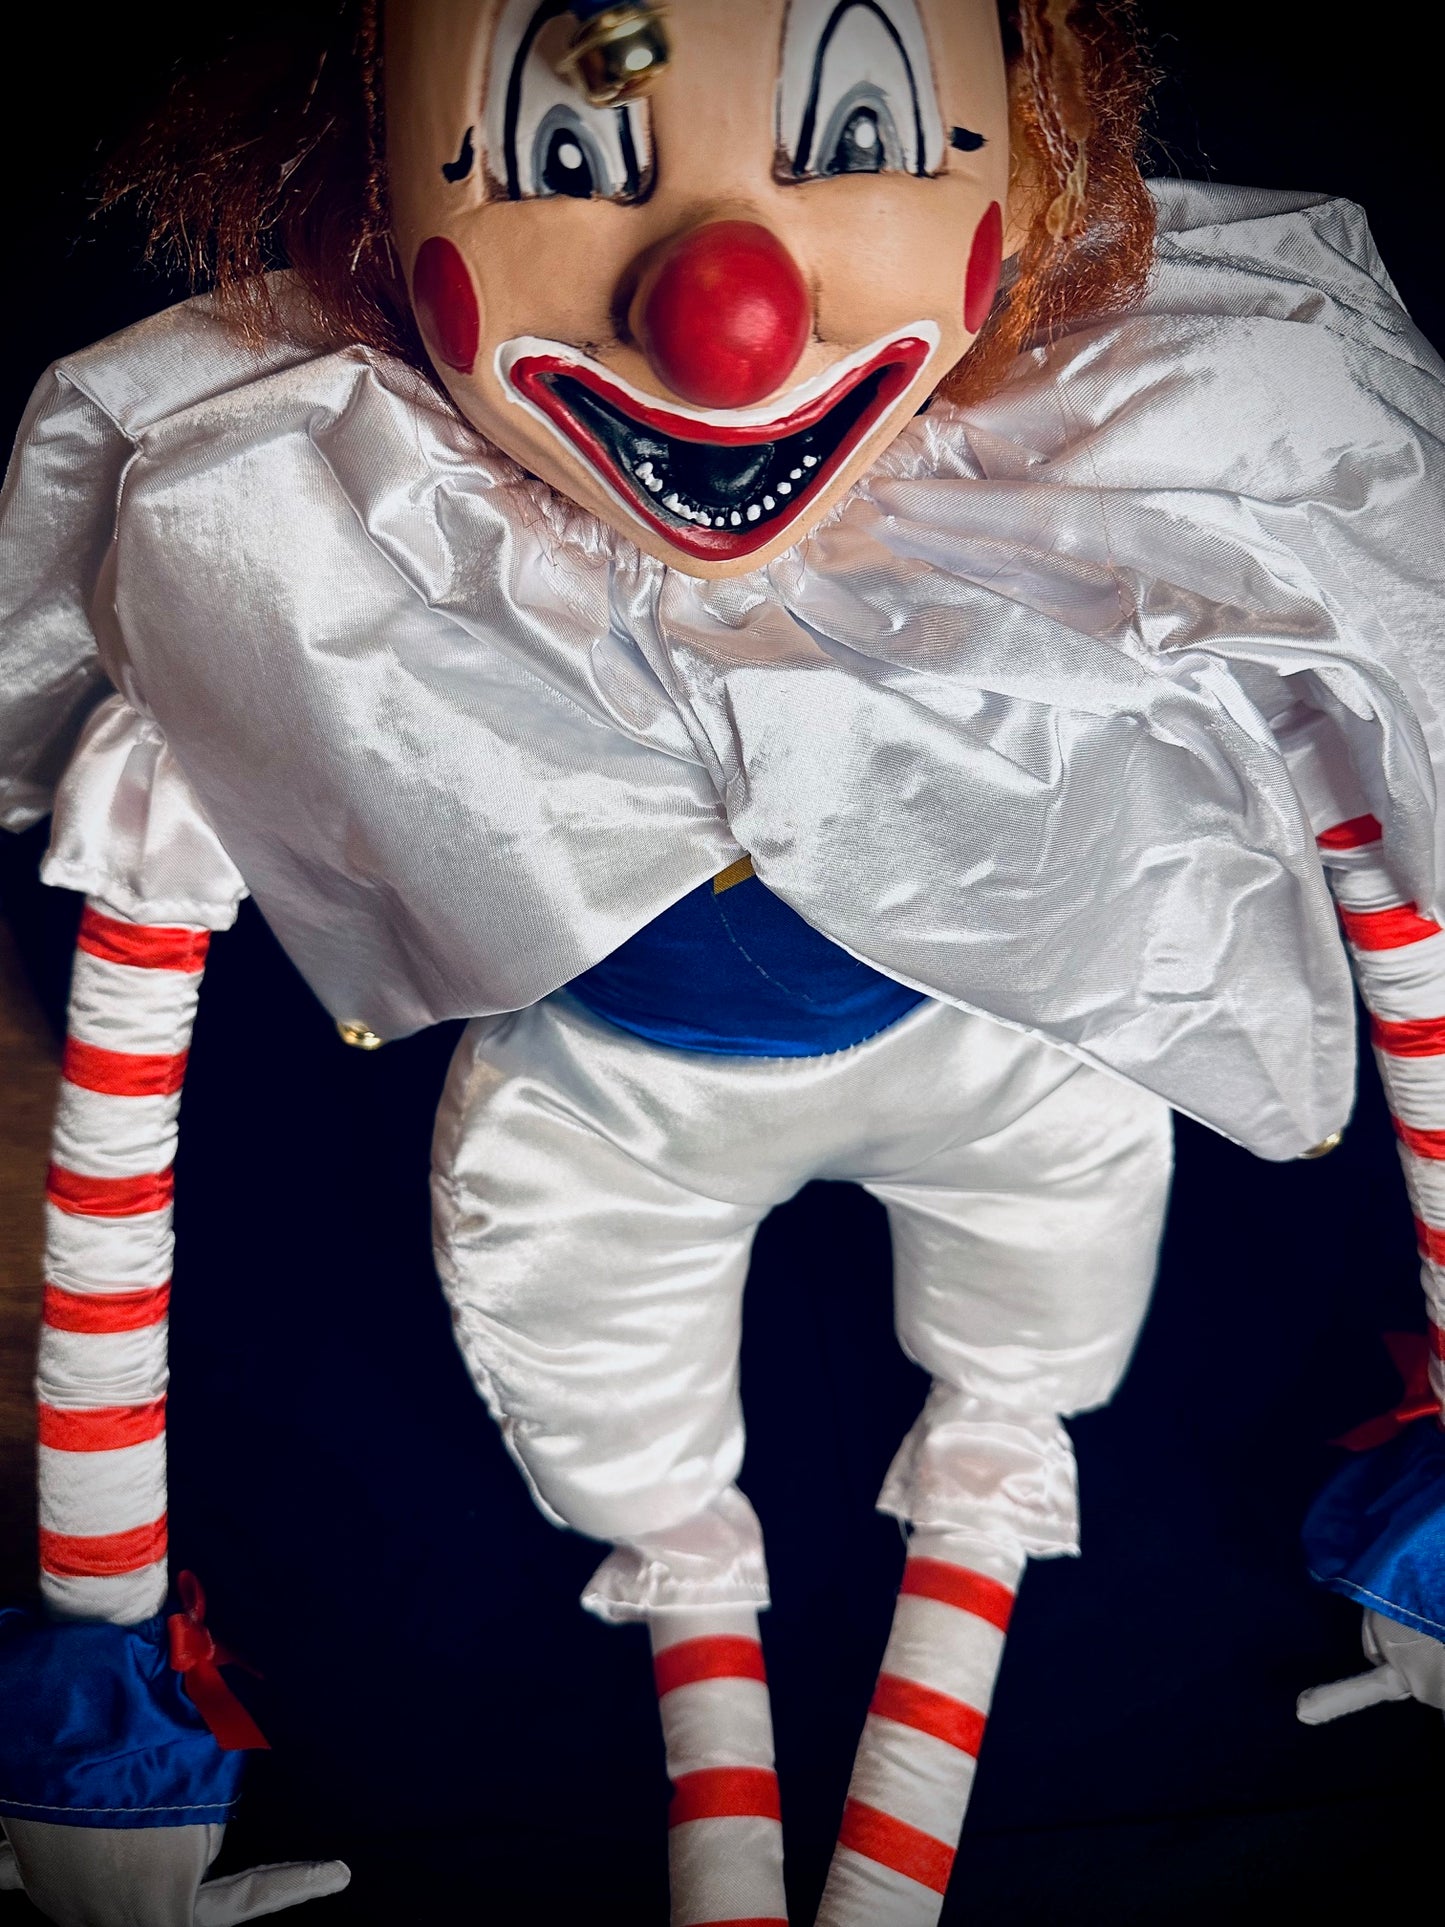 Poltergeist Clown Doll